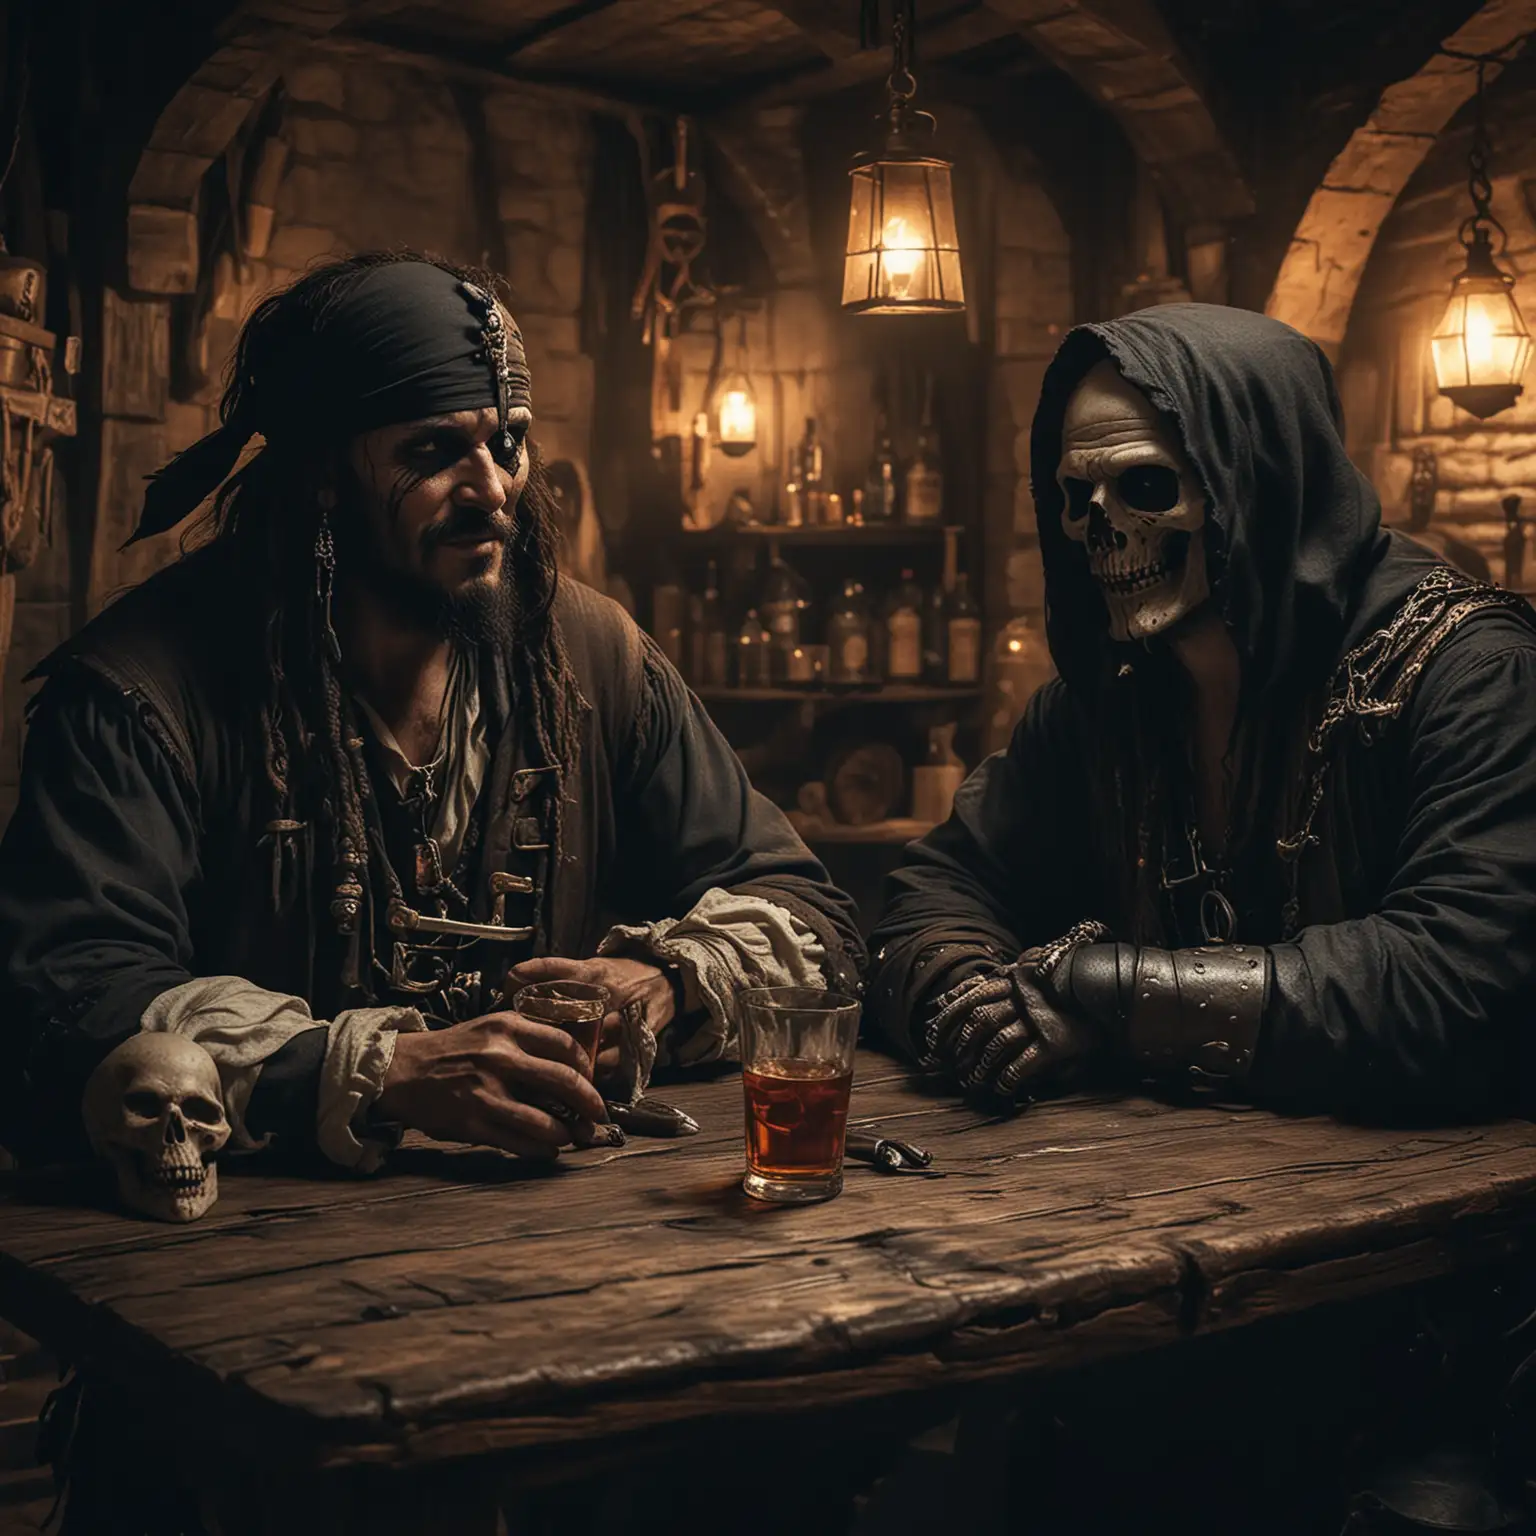 Mittelalterliche Taverne. Dunkel. 
Ein Pirat schaut freundlich. 

Neben ihm sitzt der Sensenmann. 

Beide trinken Rum.